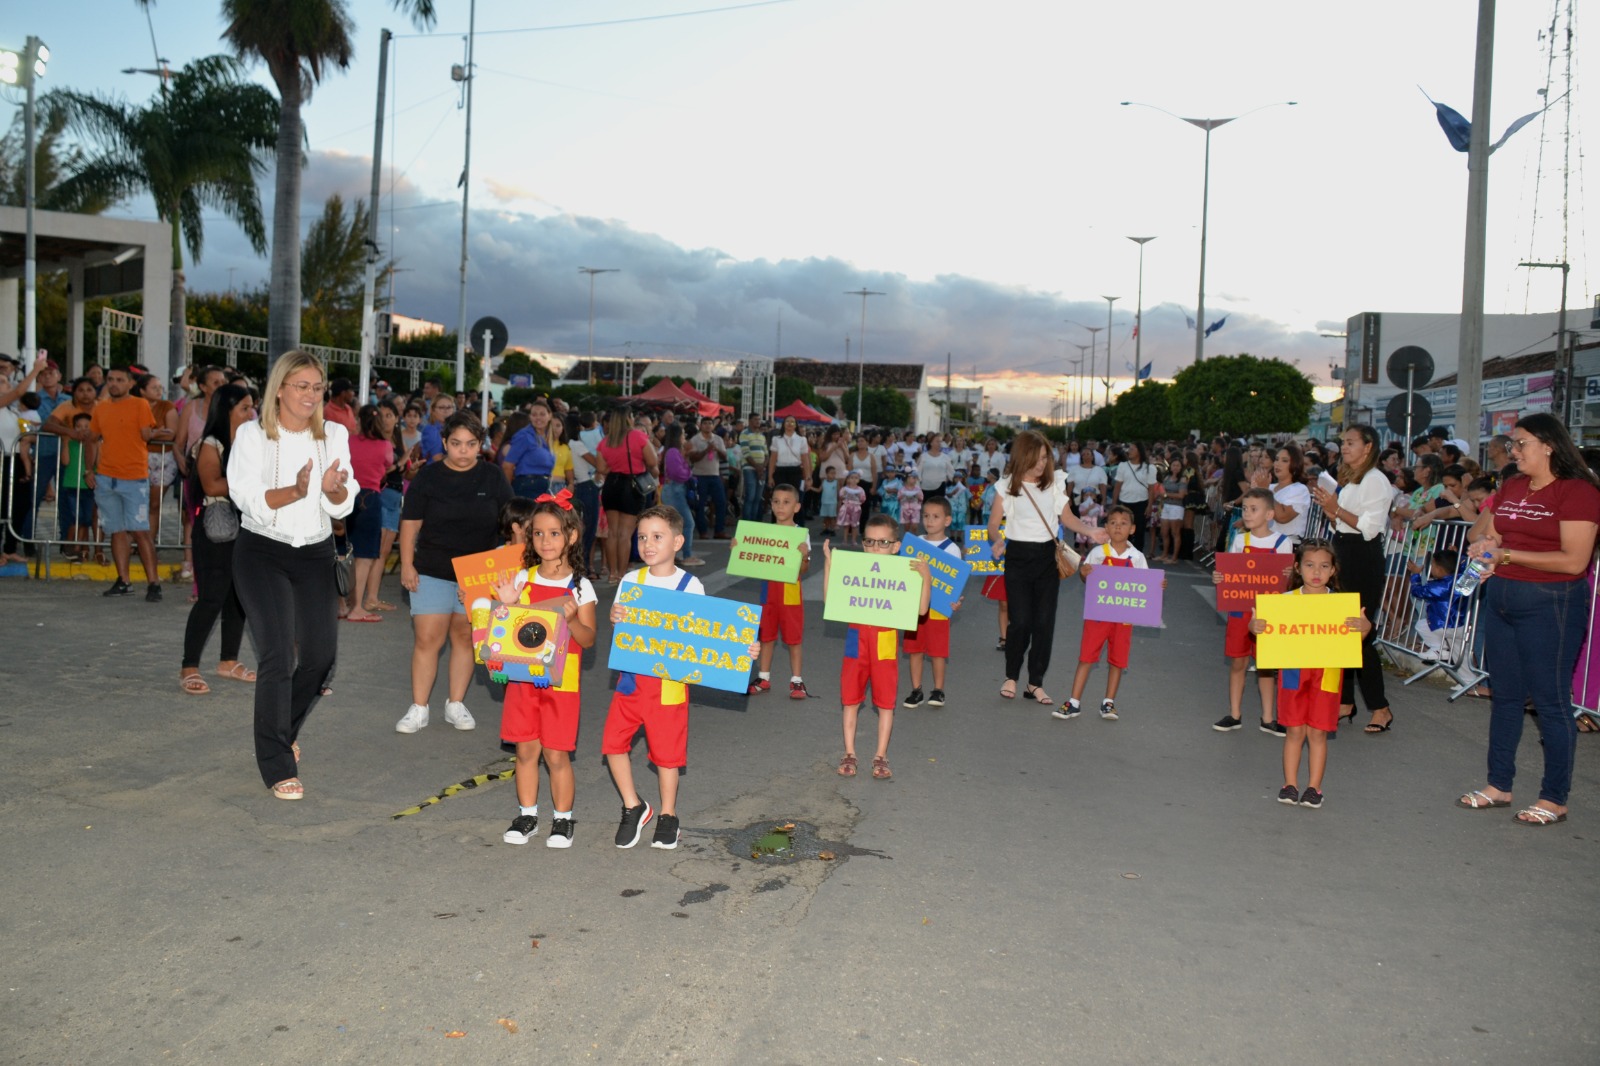 Desfiles-Civicos-em-Monteiro-acontecem-com-grande-presenca-de-publico-e-autoridades-4 Desfiles Cívicos em Monteiro acontecem com grande presença de público e autoridades